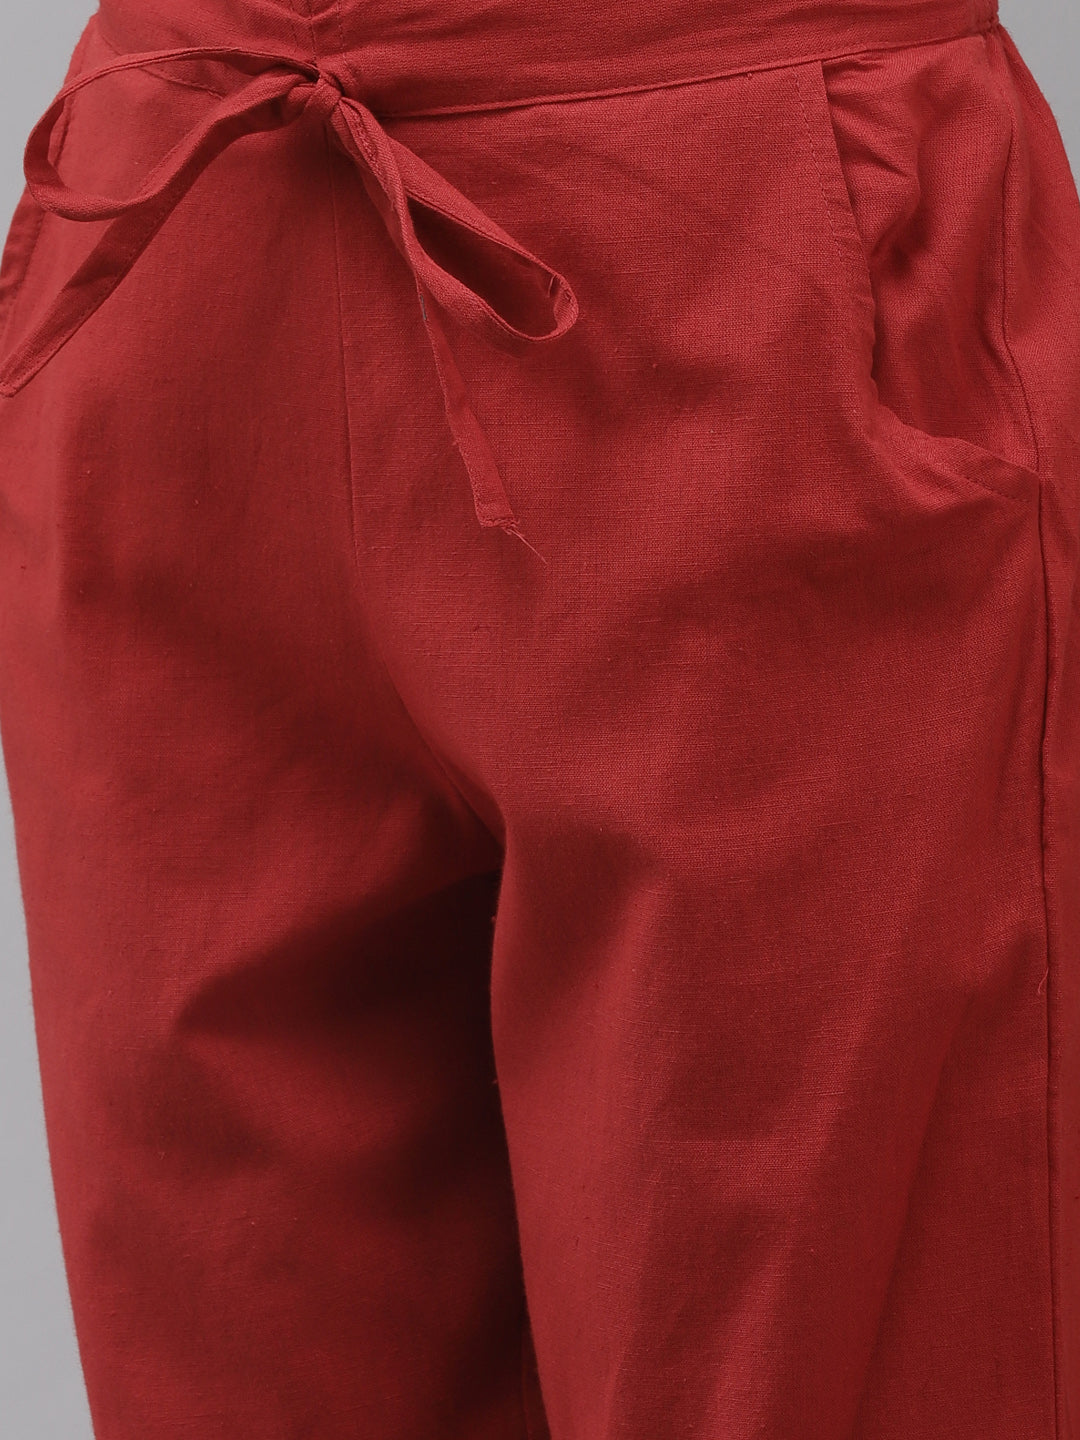 Women's Silk Blend Red Embroidered A-Line Kurta Trouser Set - Navyaa